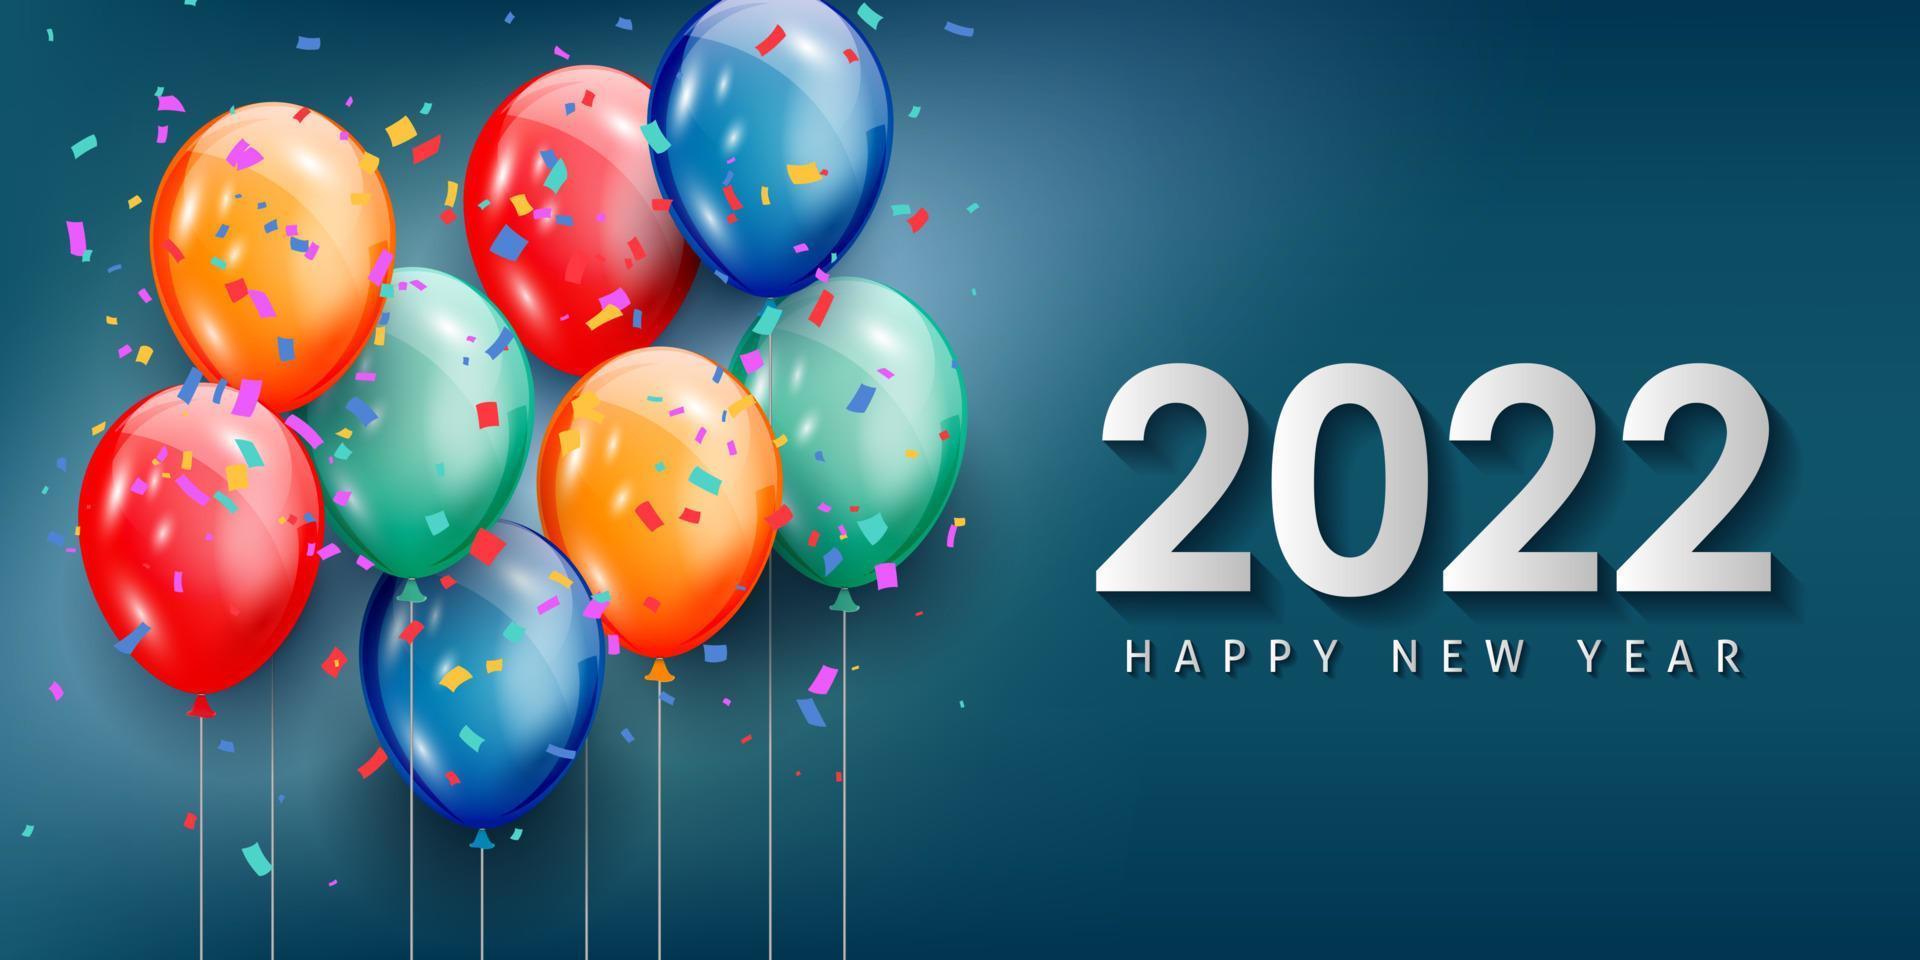 Feliz año nuevo 2022 tarjeta de felicitación con globos de colores realistas diseño de fondo de celebración para tarjetas de felicitación, carteles, pancartas. ilustración vectorial. vector